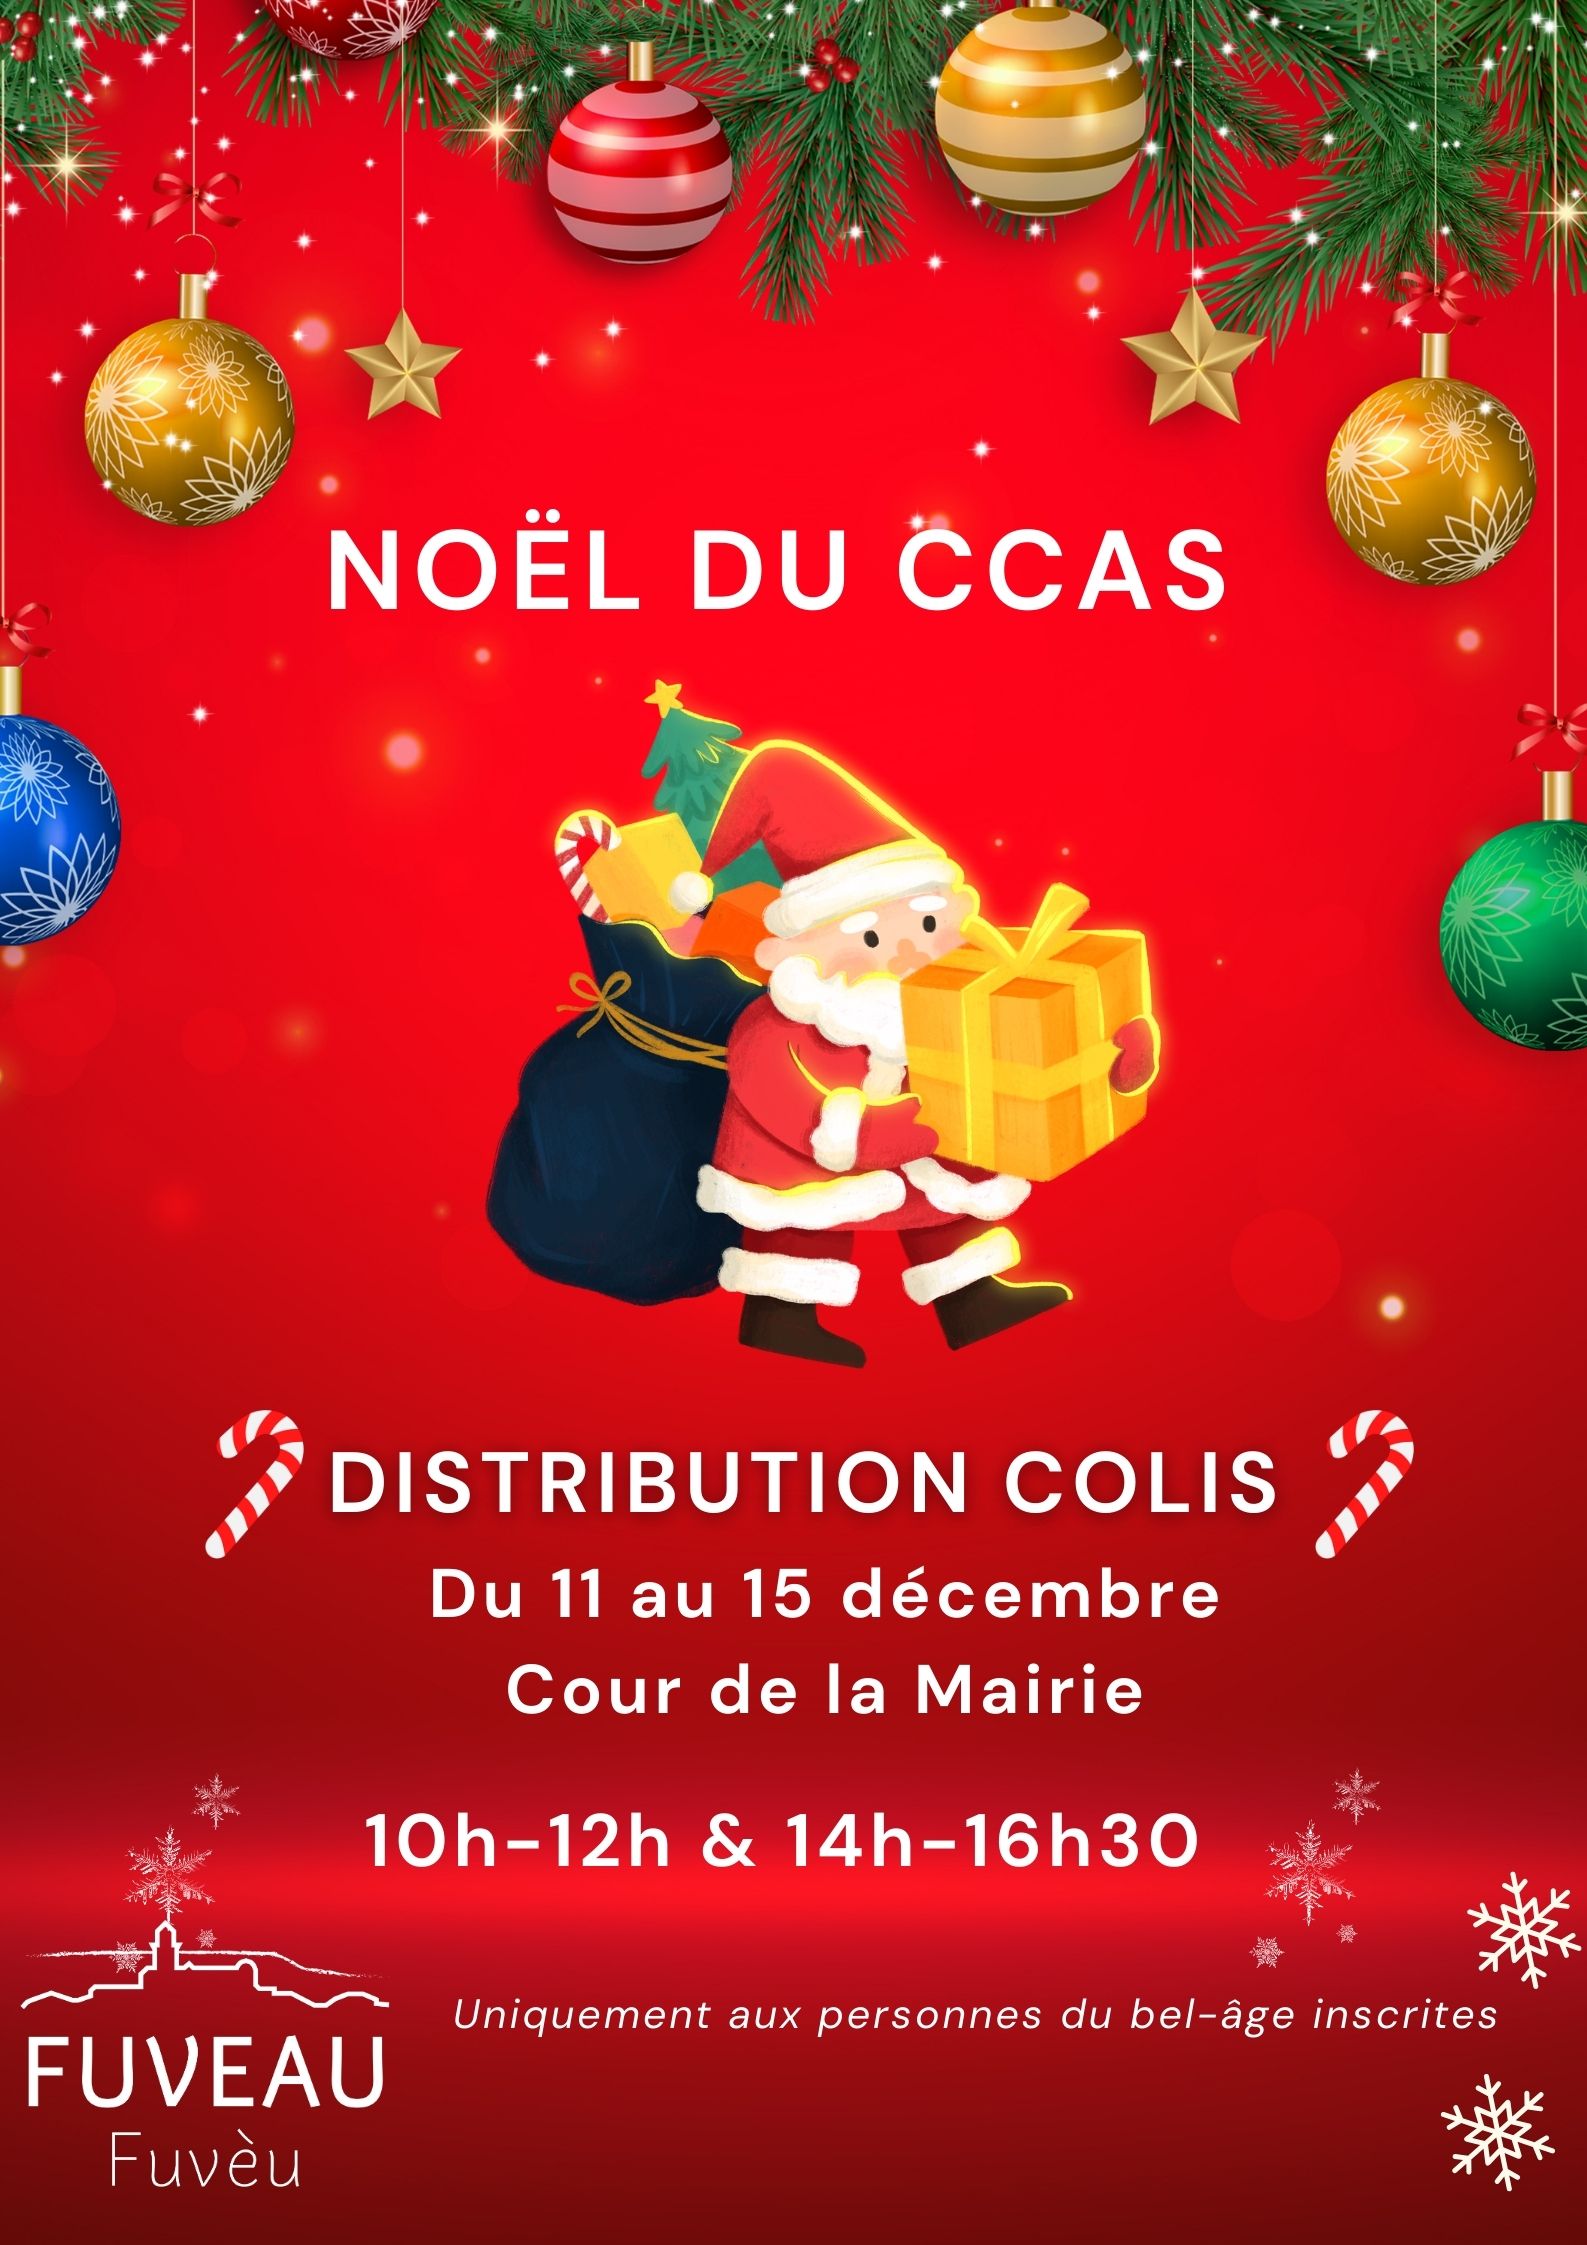 Distribution colis de Noël par le CCAS - Fuveau